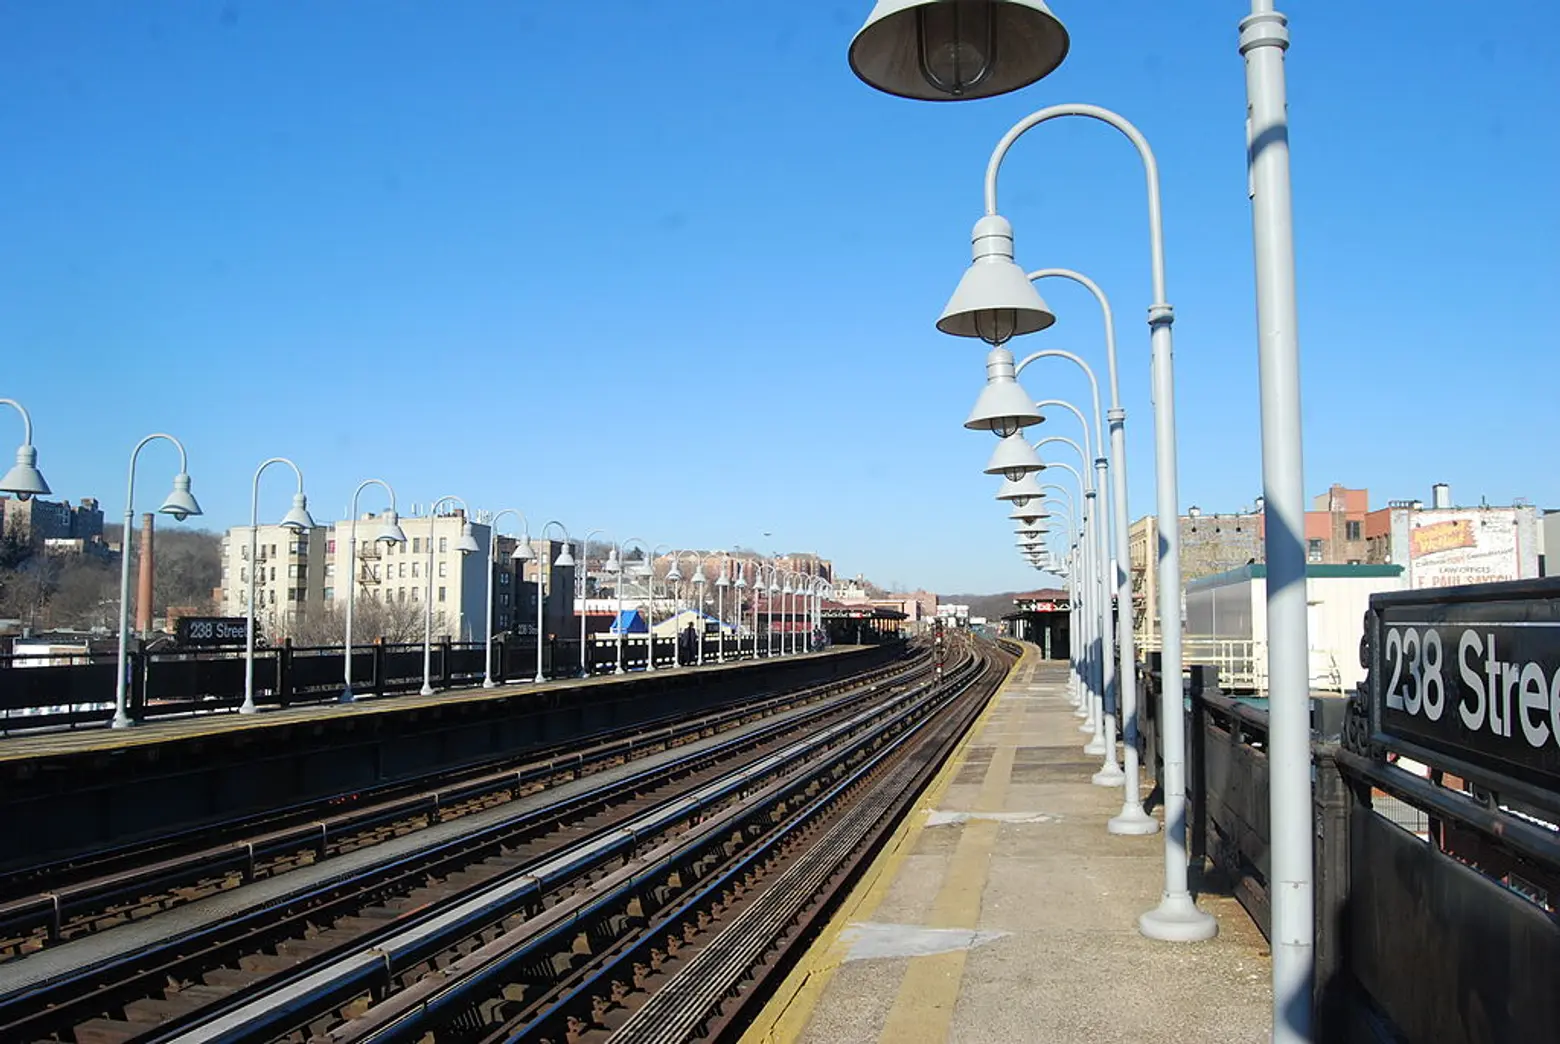 Manhattan-bound 238th Street 1 train platform will close through winter 2019